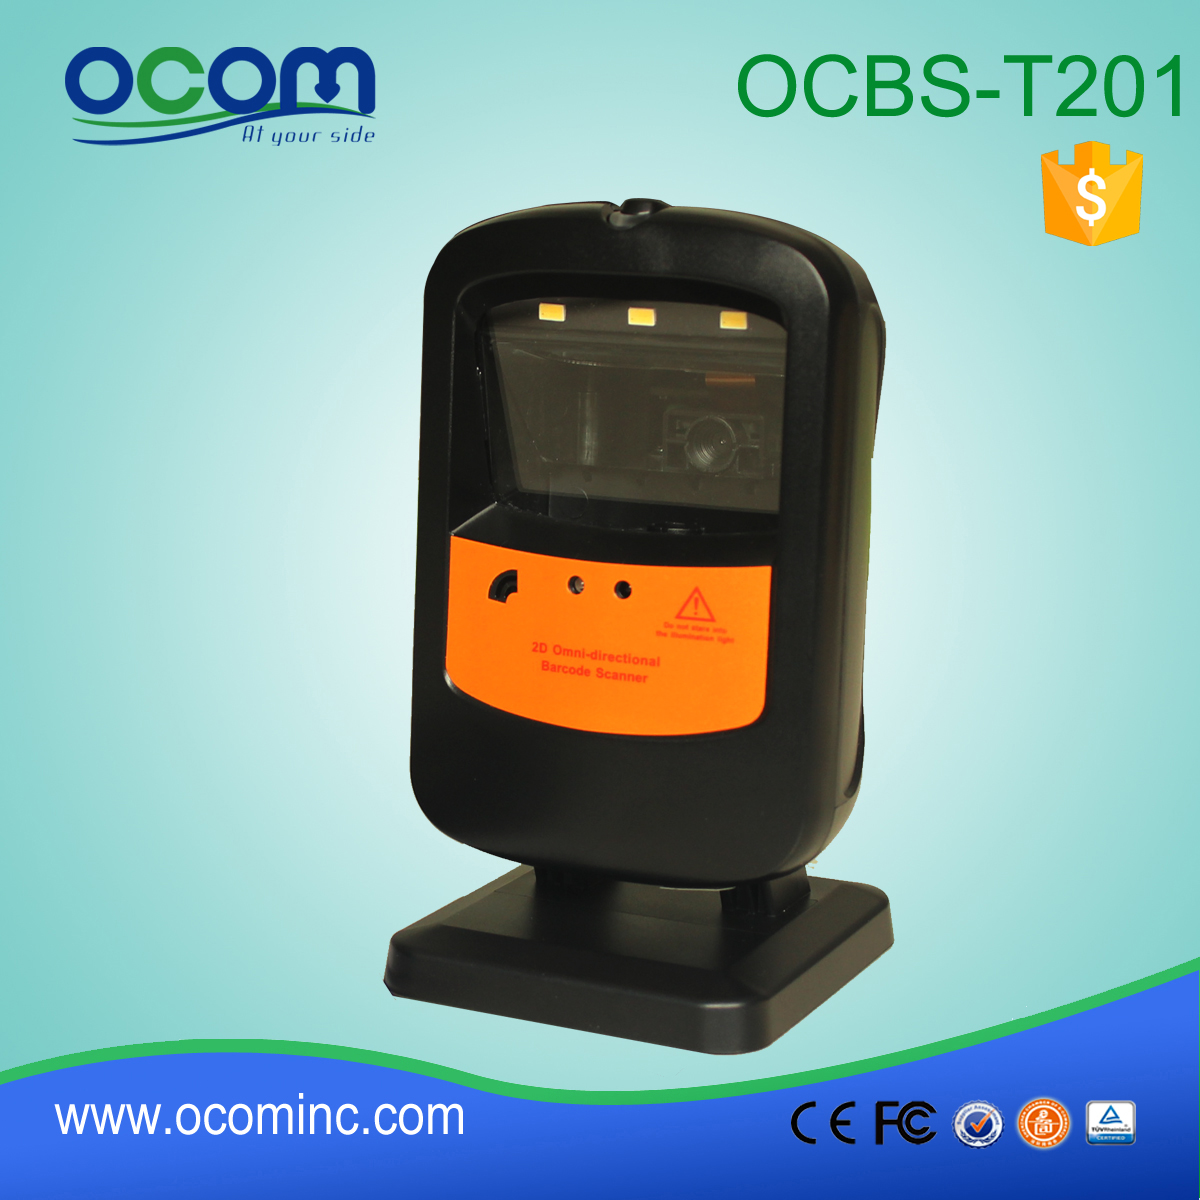 OCB-T201: omnidirezionale di codici a barre prezzo scanner di codici a barre modulo lettore